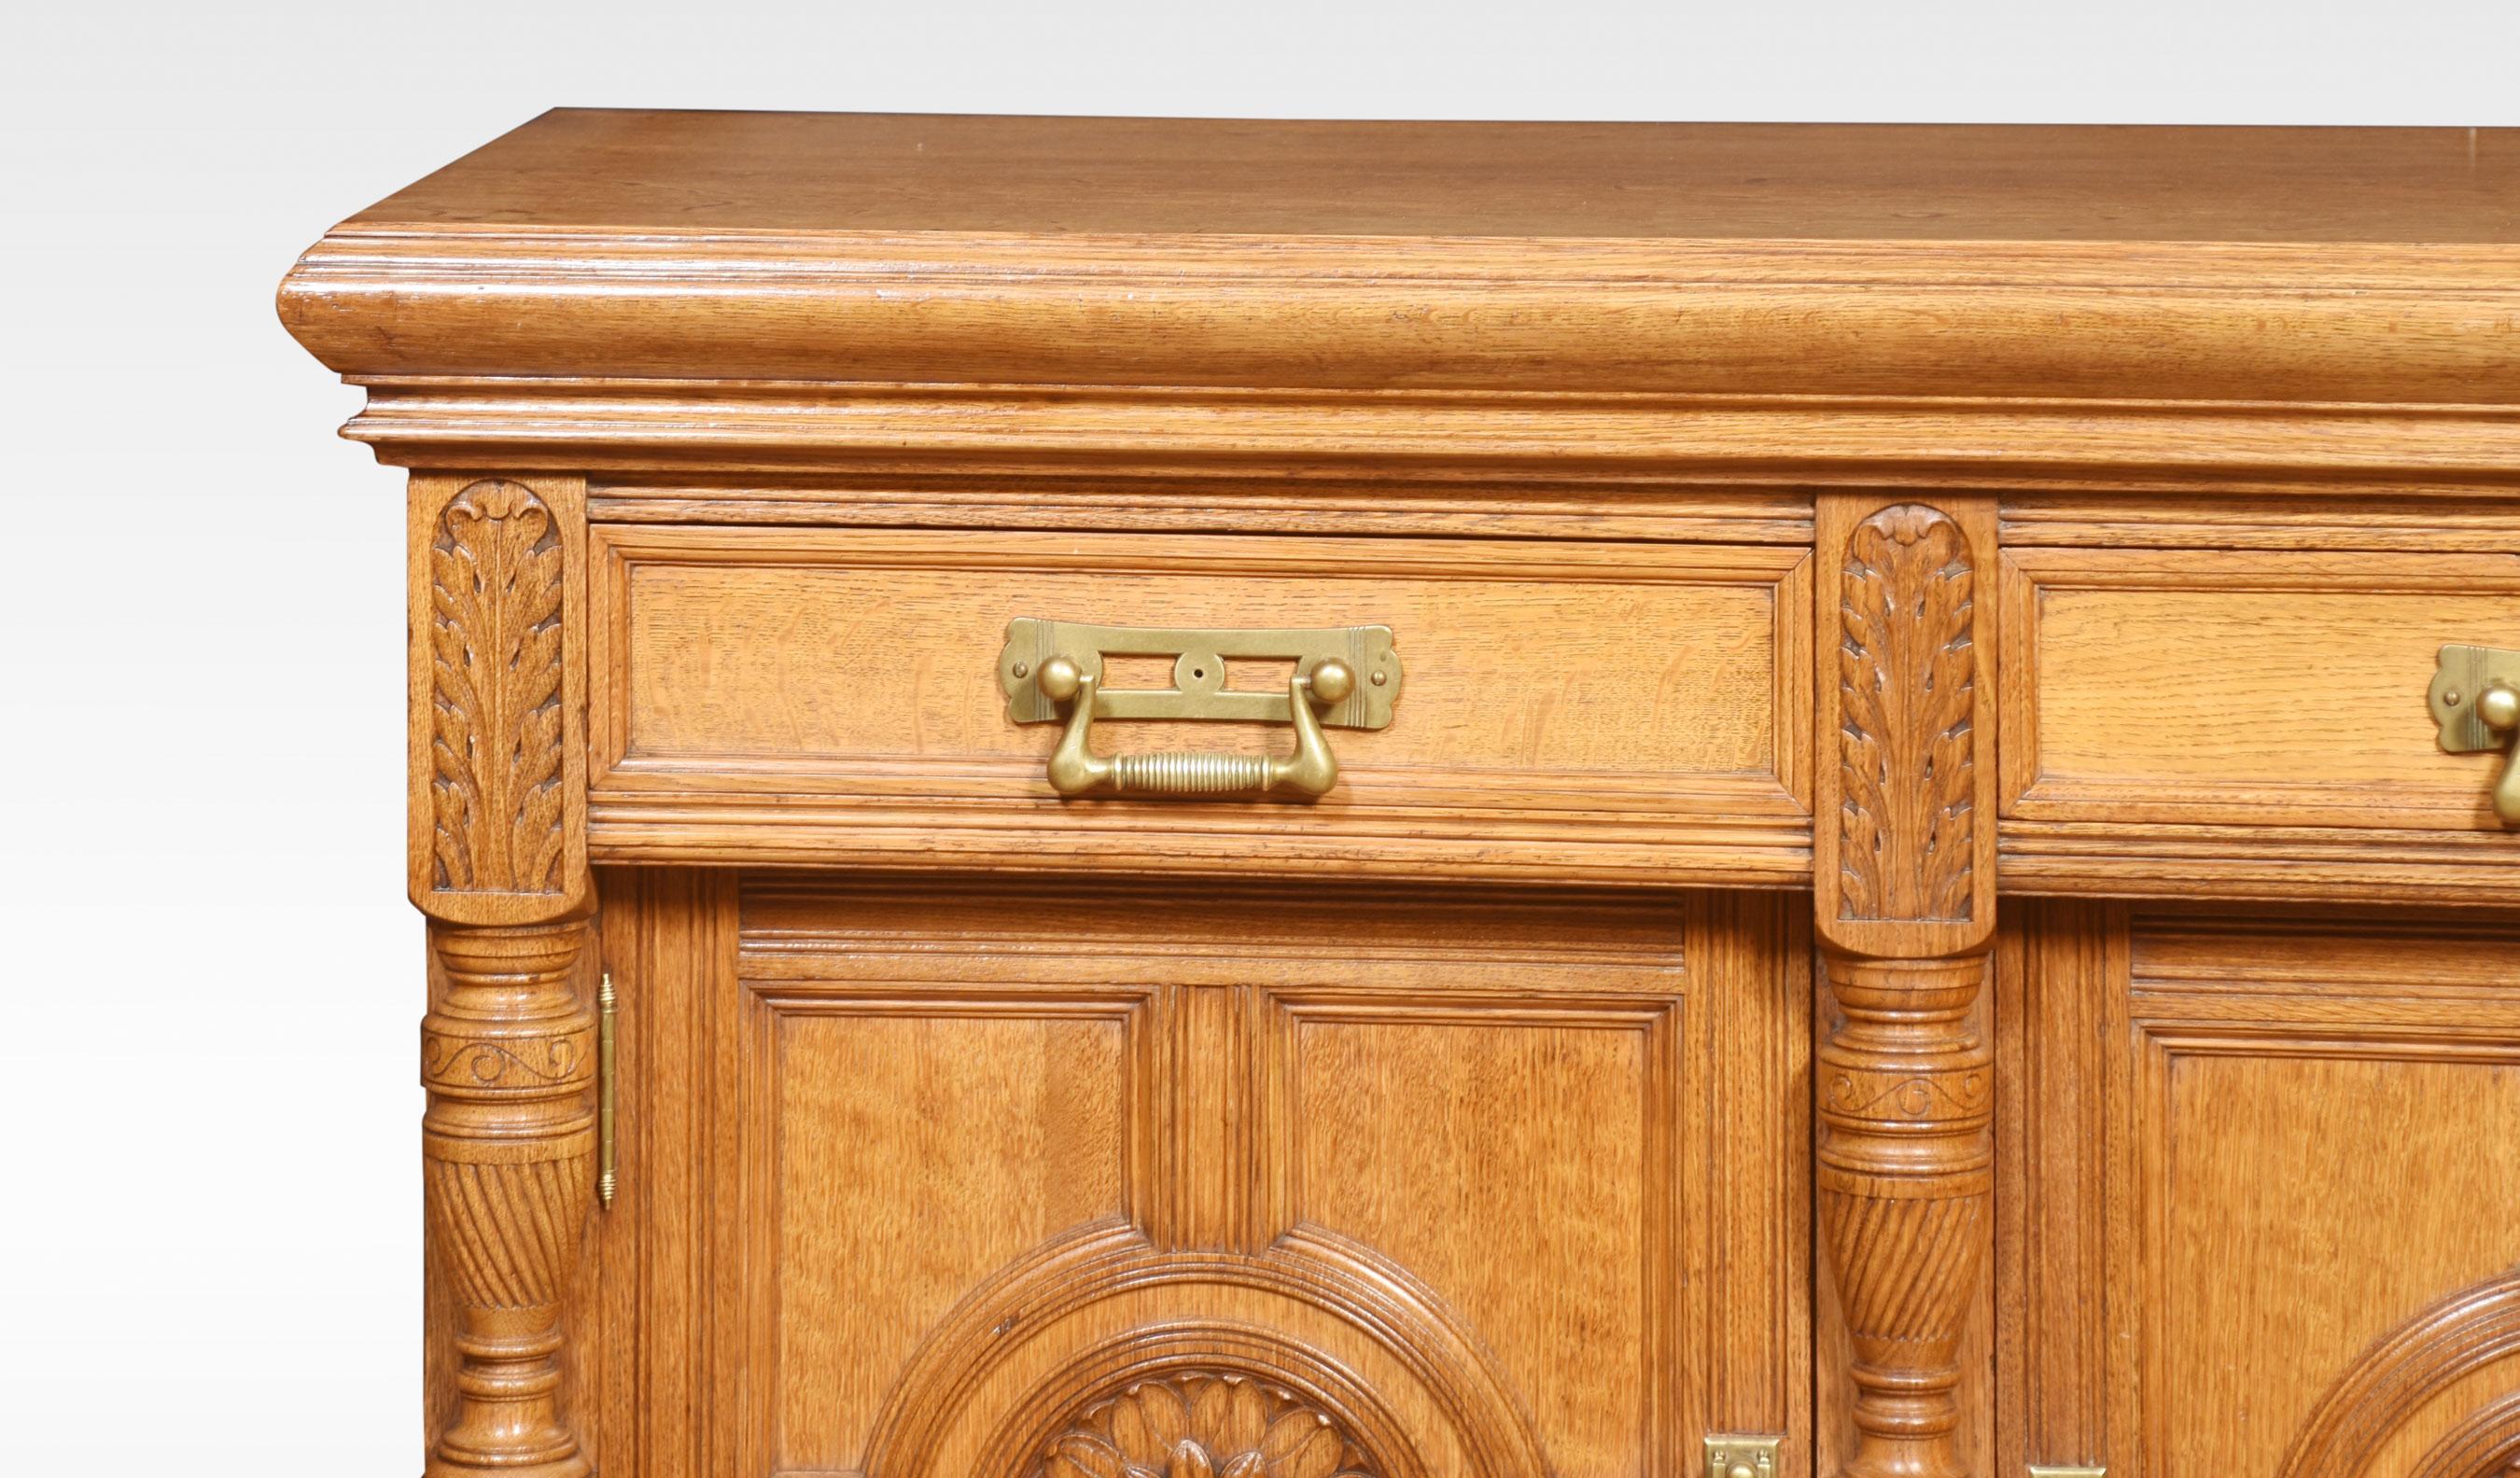 Anrichte aus Eichenholz aus dem 19. Jahrhundert, große rechteckige Platte mit profiliertem Rand über zwei Schubladen, die mit kühnen Messinggriffen ausgestattet sind. Der Sockel ist mit einem Paar getäfelter Türen ausgestattet, die in der Mitte